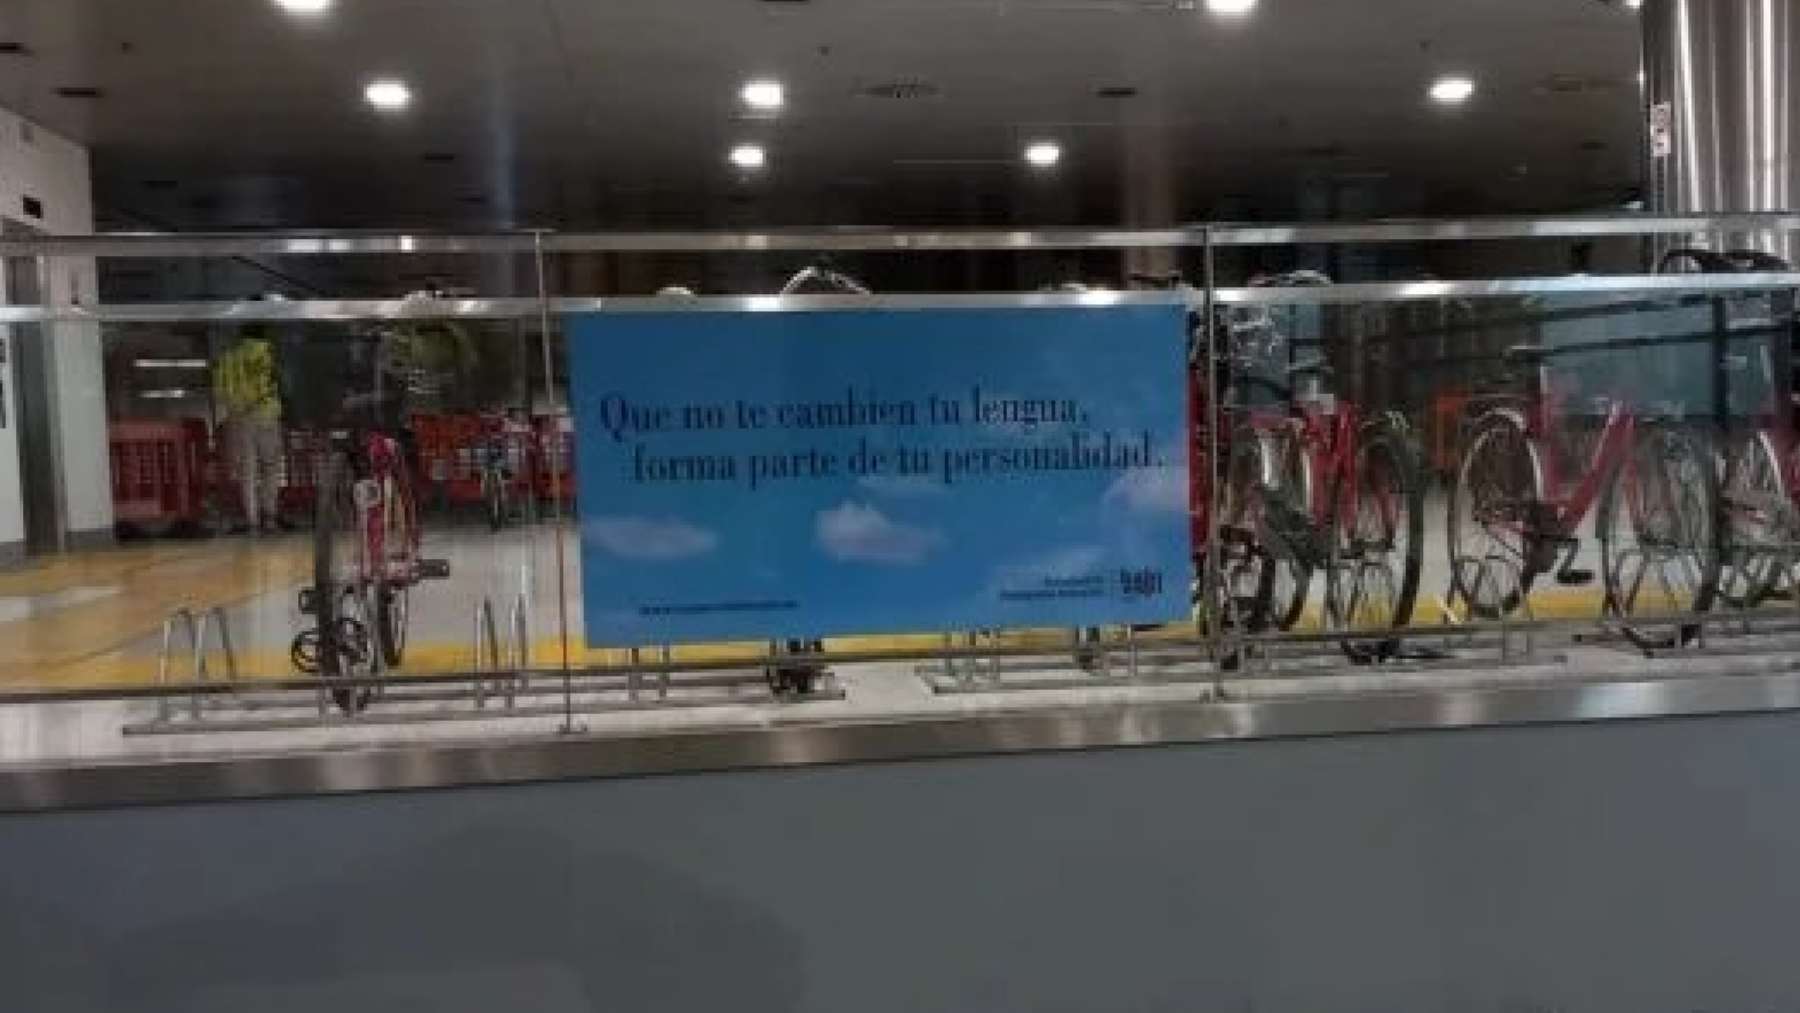 Imagen del vinilo publicitario de Hablamos Español en la Estación Intermodal de Palma.